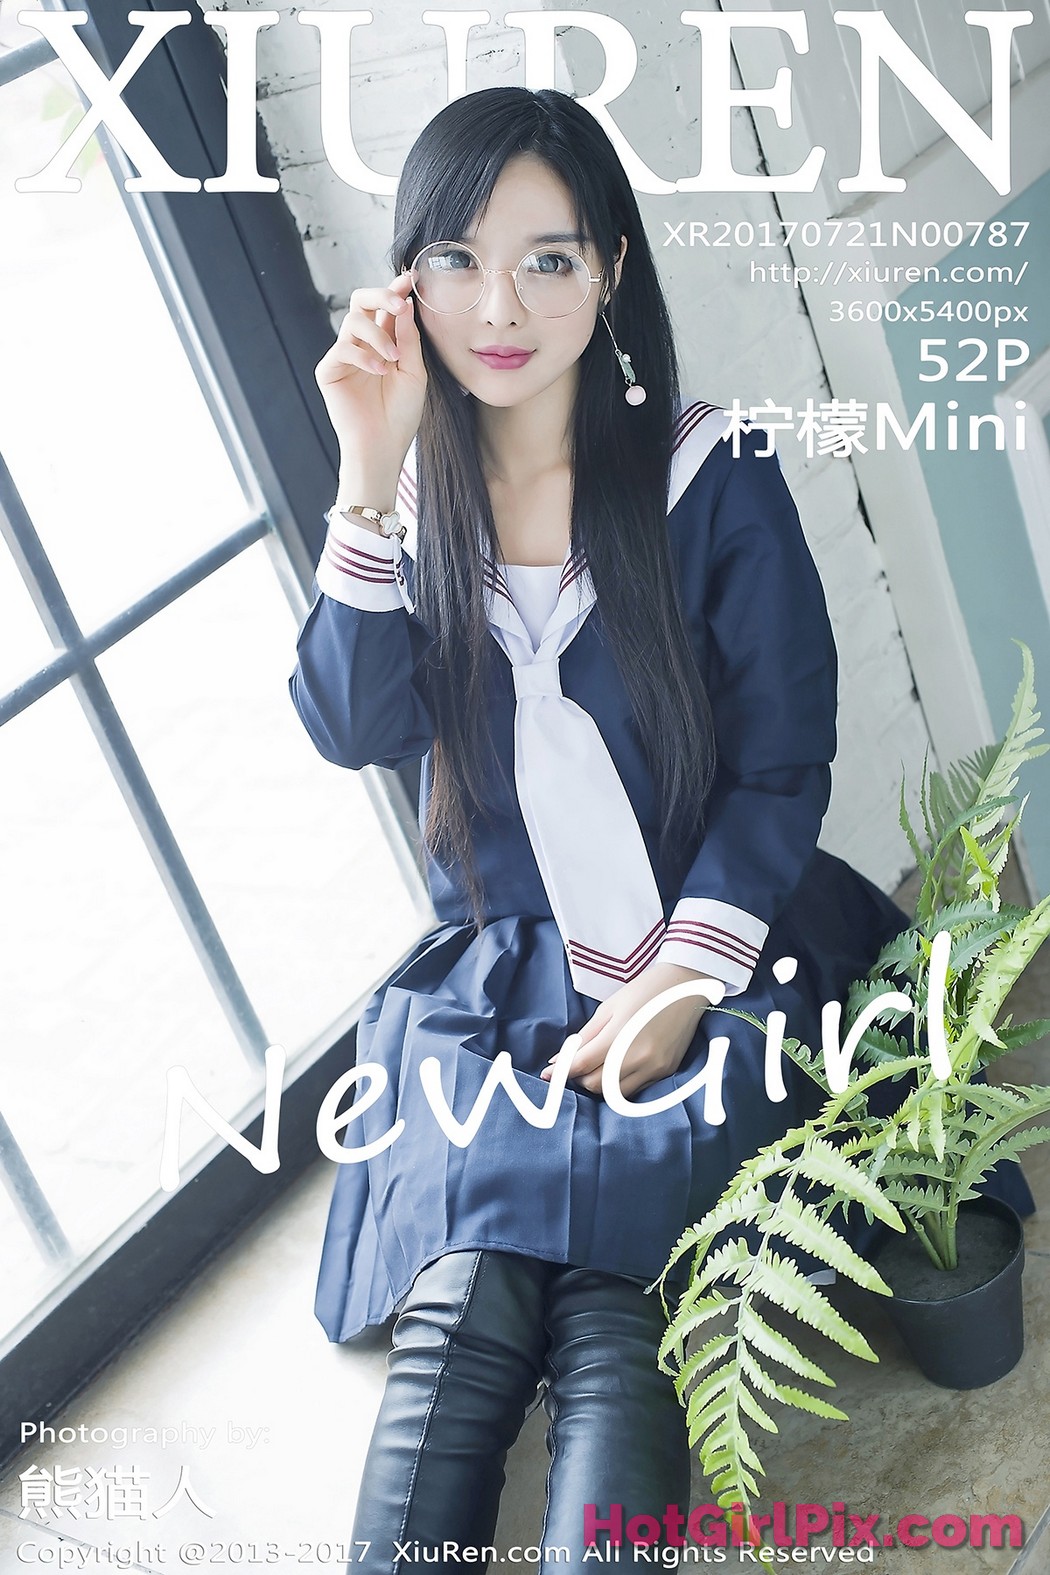 [XIUREN] No.787 Ning Meng 柠檬Mini Cover Photo